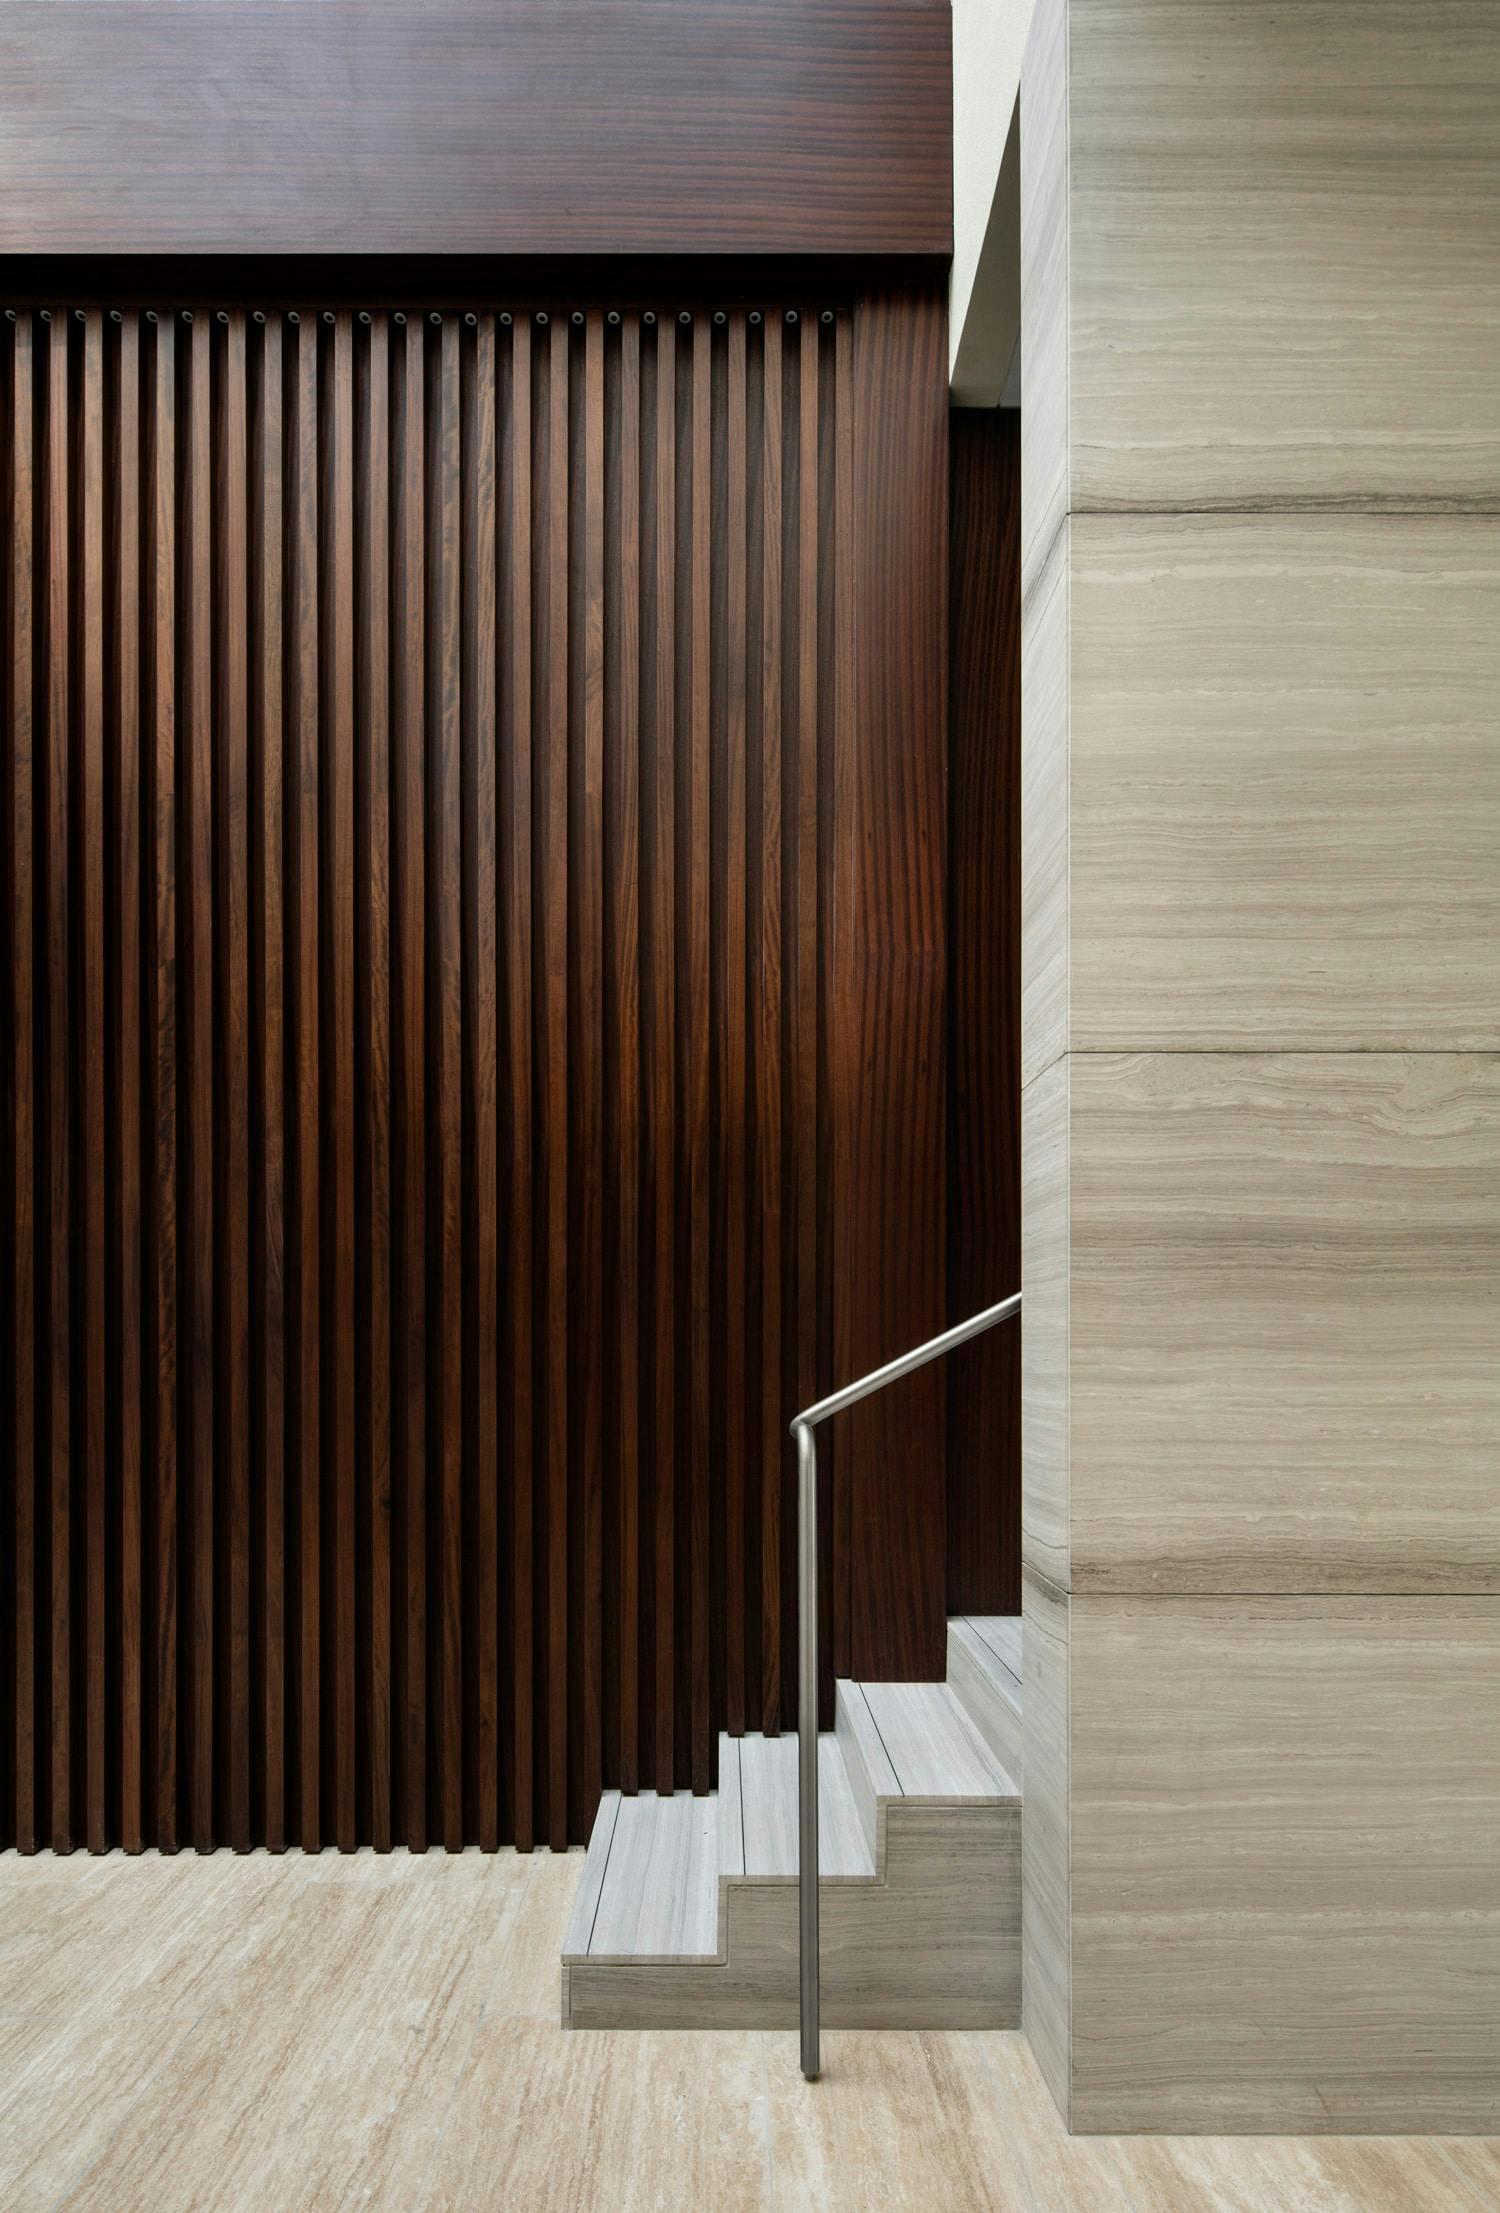 Imagem número 48 da actual secção de Um projeto de design de interiores premiado concluído com Dekton Kelya da Cosentino Portugal